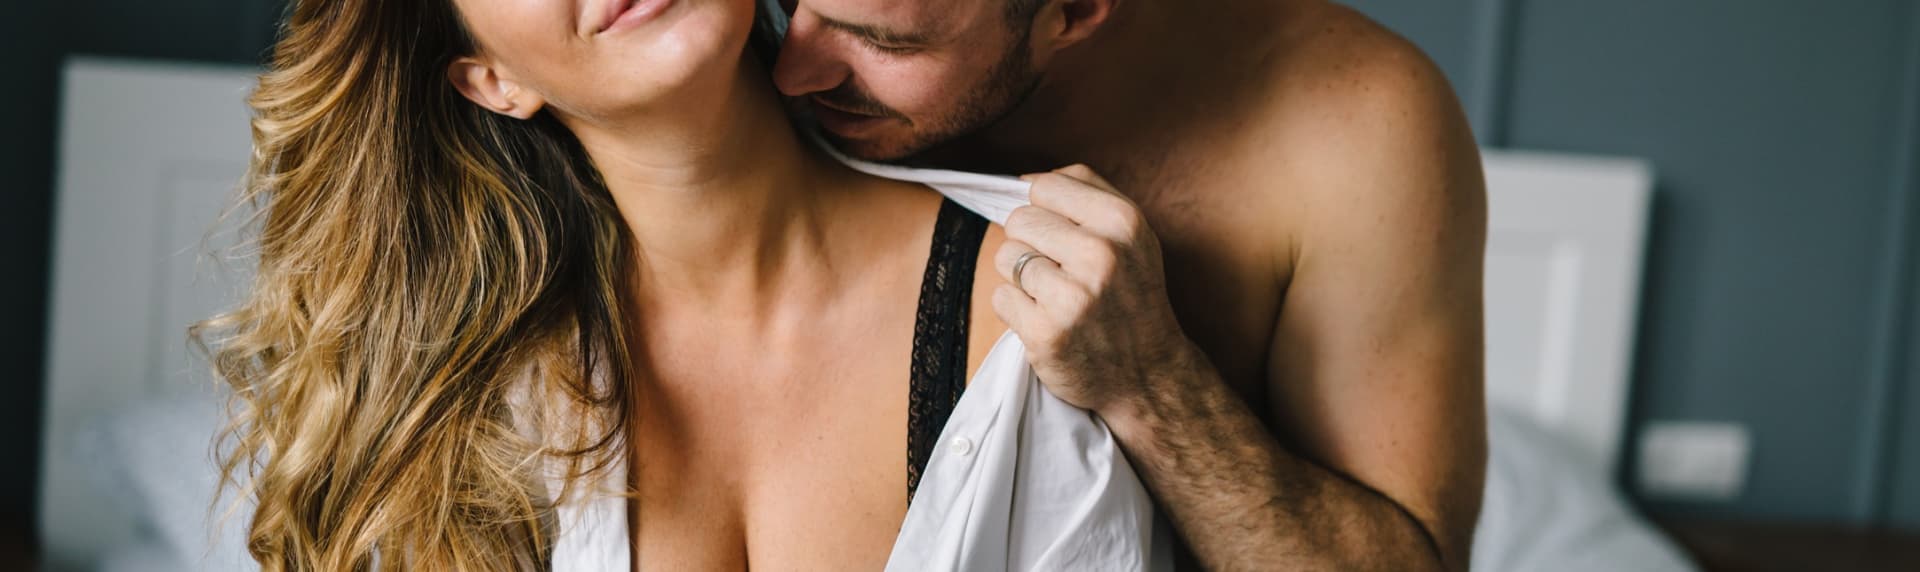 Она ищет его для секса. Украинский сайт сексуальных знакомств